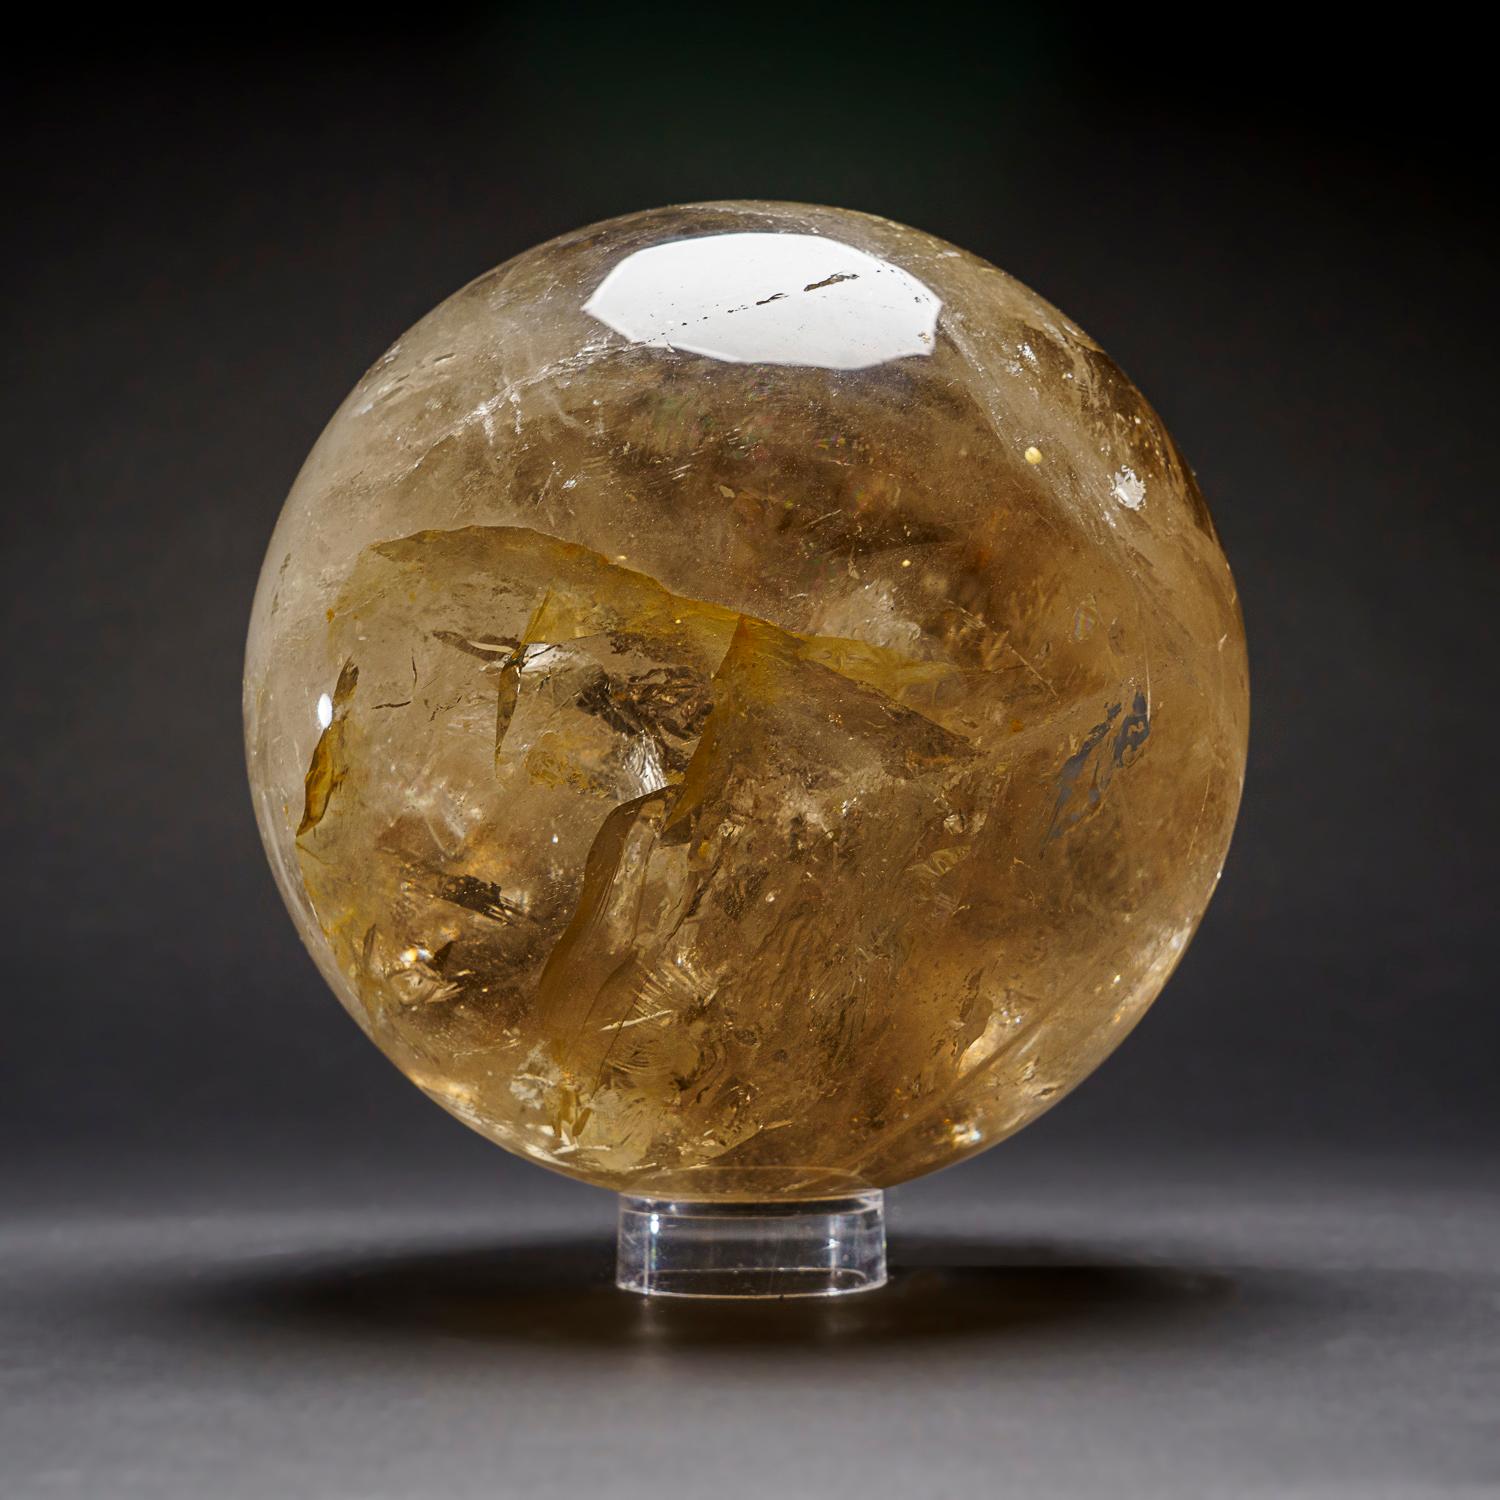 Cette sphère de quartz fumé du Brésil, polie par des experts, est d'une qualité muséale et présente des niveaux élevés de transparence et de réflectivité, ce qui en fait un ajout précieux à toute collection de cristaux, de minéraux ou d'objets de